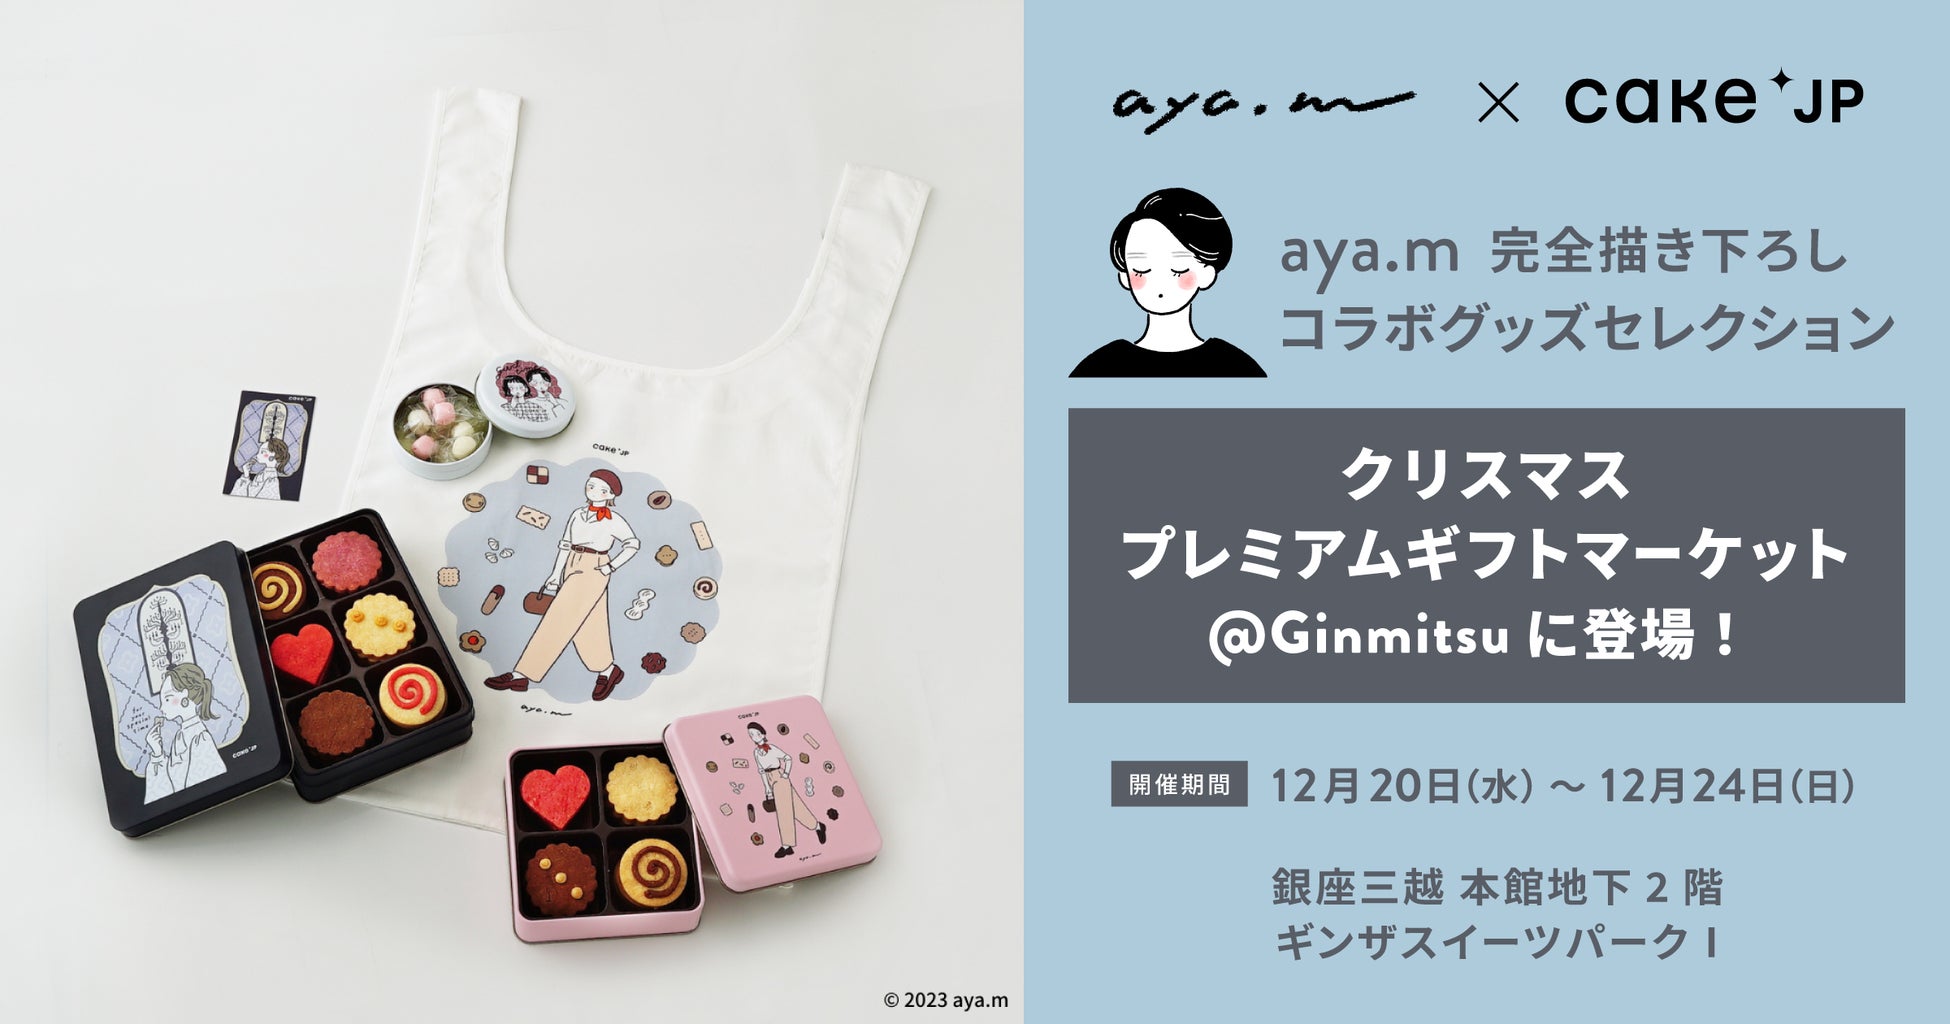 Cake.jp × 人気イラストレーター『aya.m』コラボ　銀座三越のシンボルが描かれたオリジナルデザインのクッキー缶など全4商品を銀座三越ポップアップ限定で先行販売